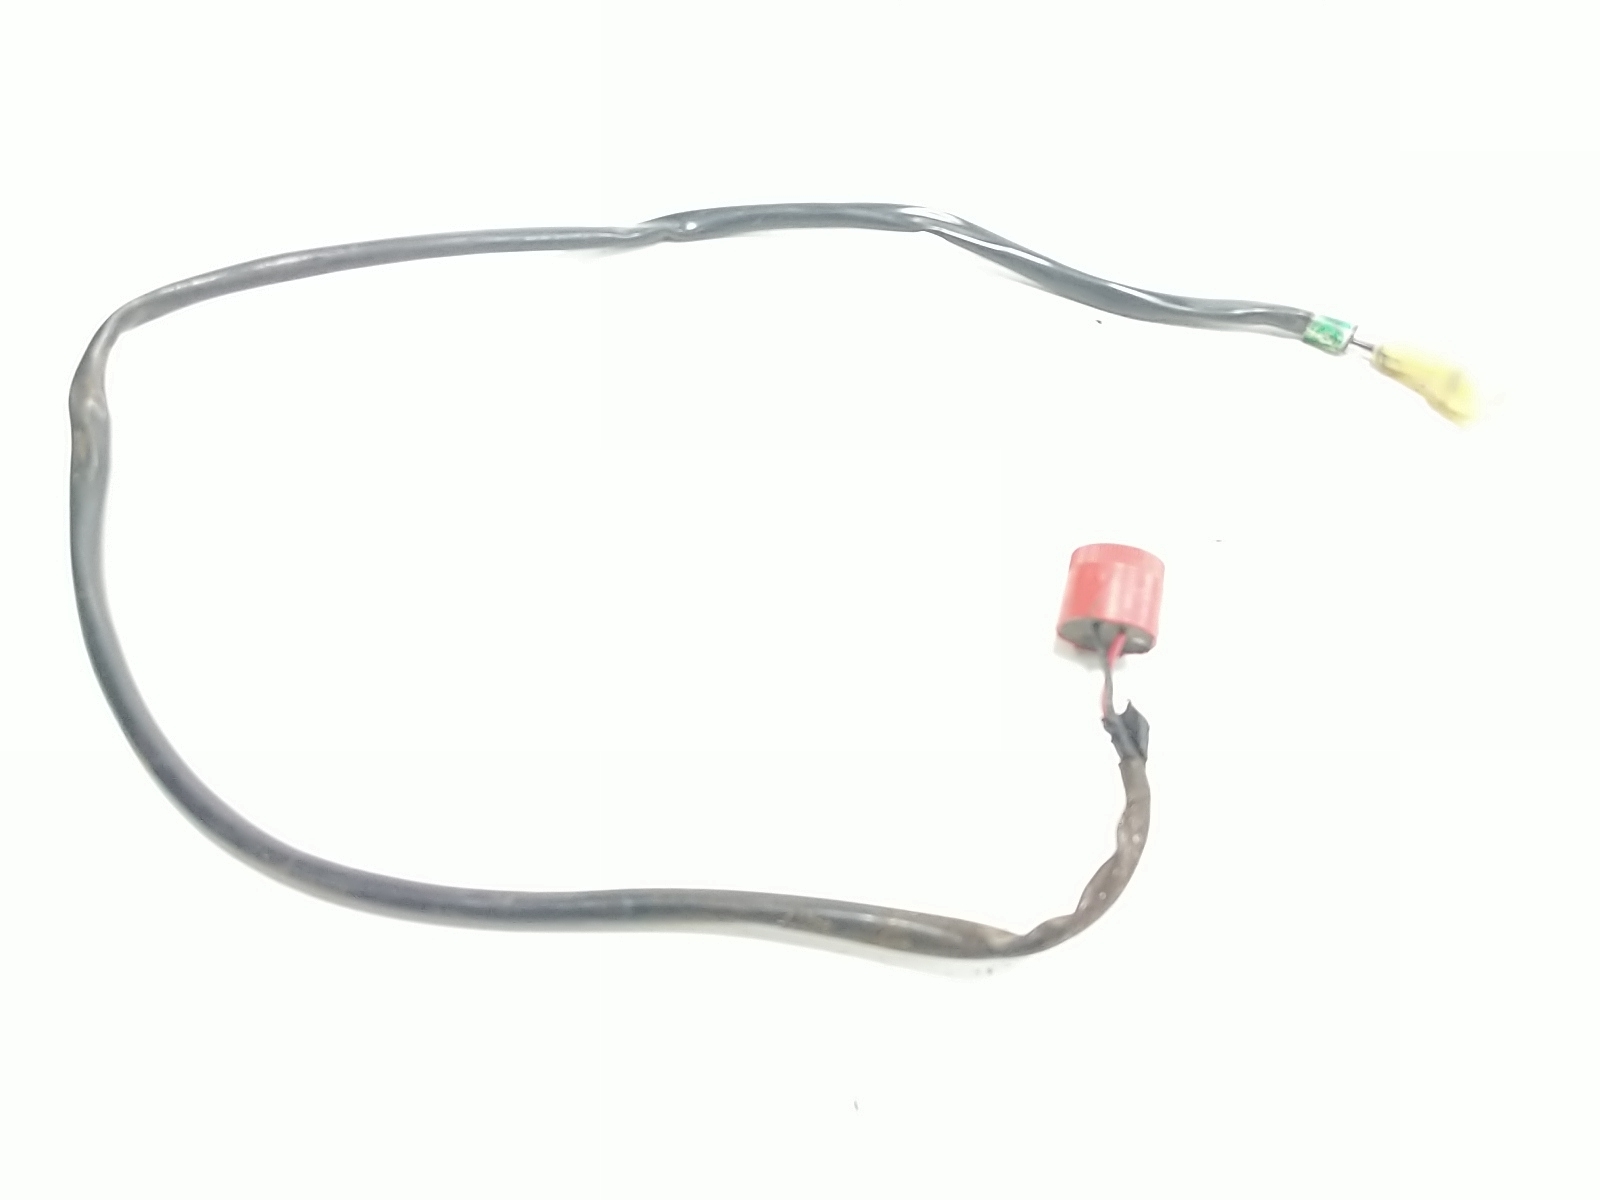 06 Honda Aquatrax F12 Relay Wire Wiring Harness